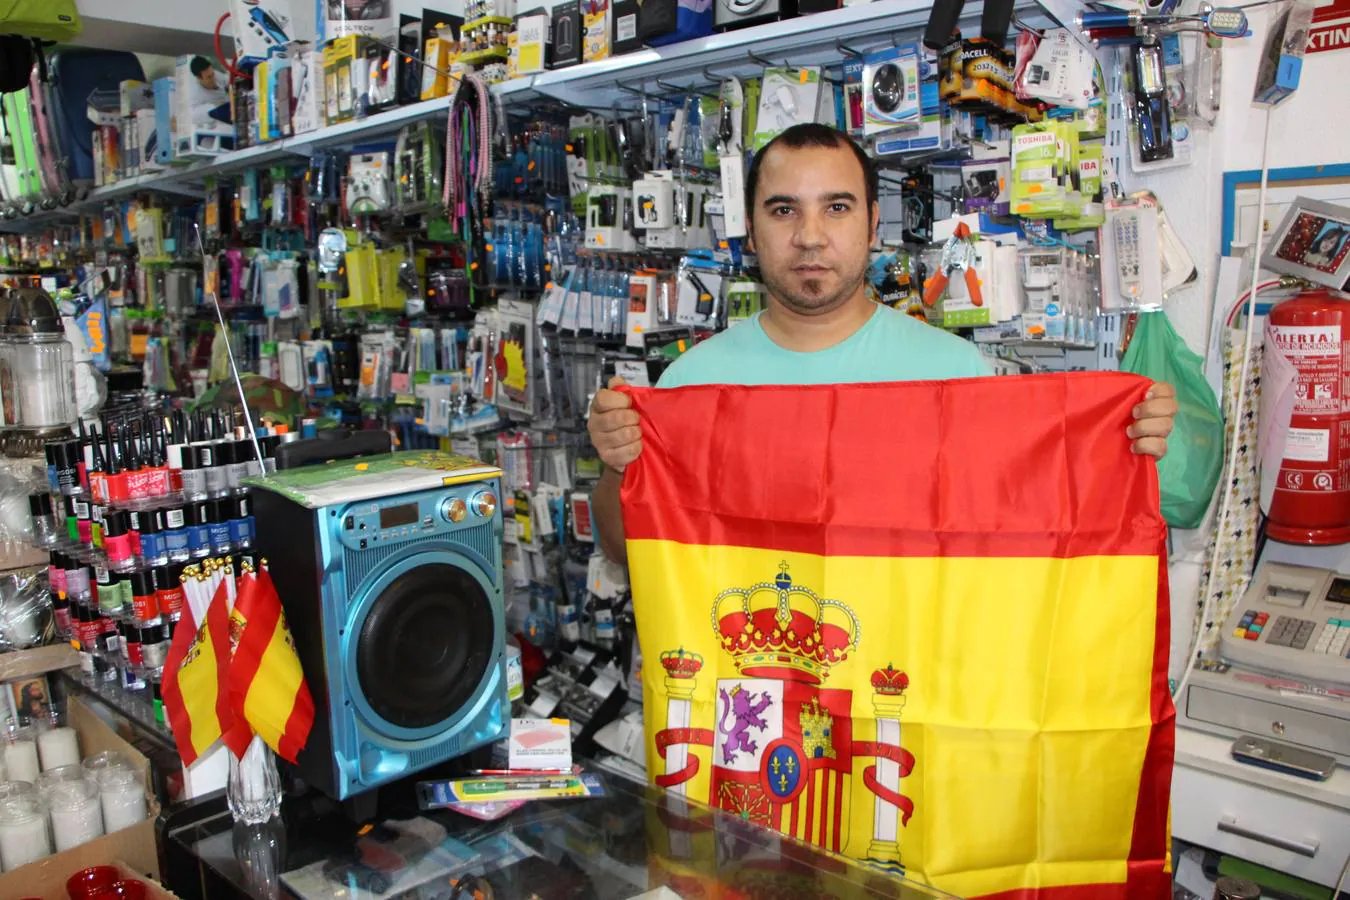 Mustafá en su tienda de la calle Pajares mostrando la bandera constitucional de España.